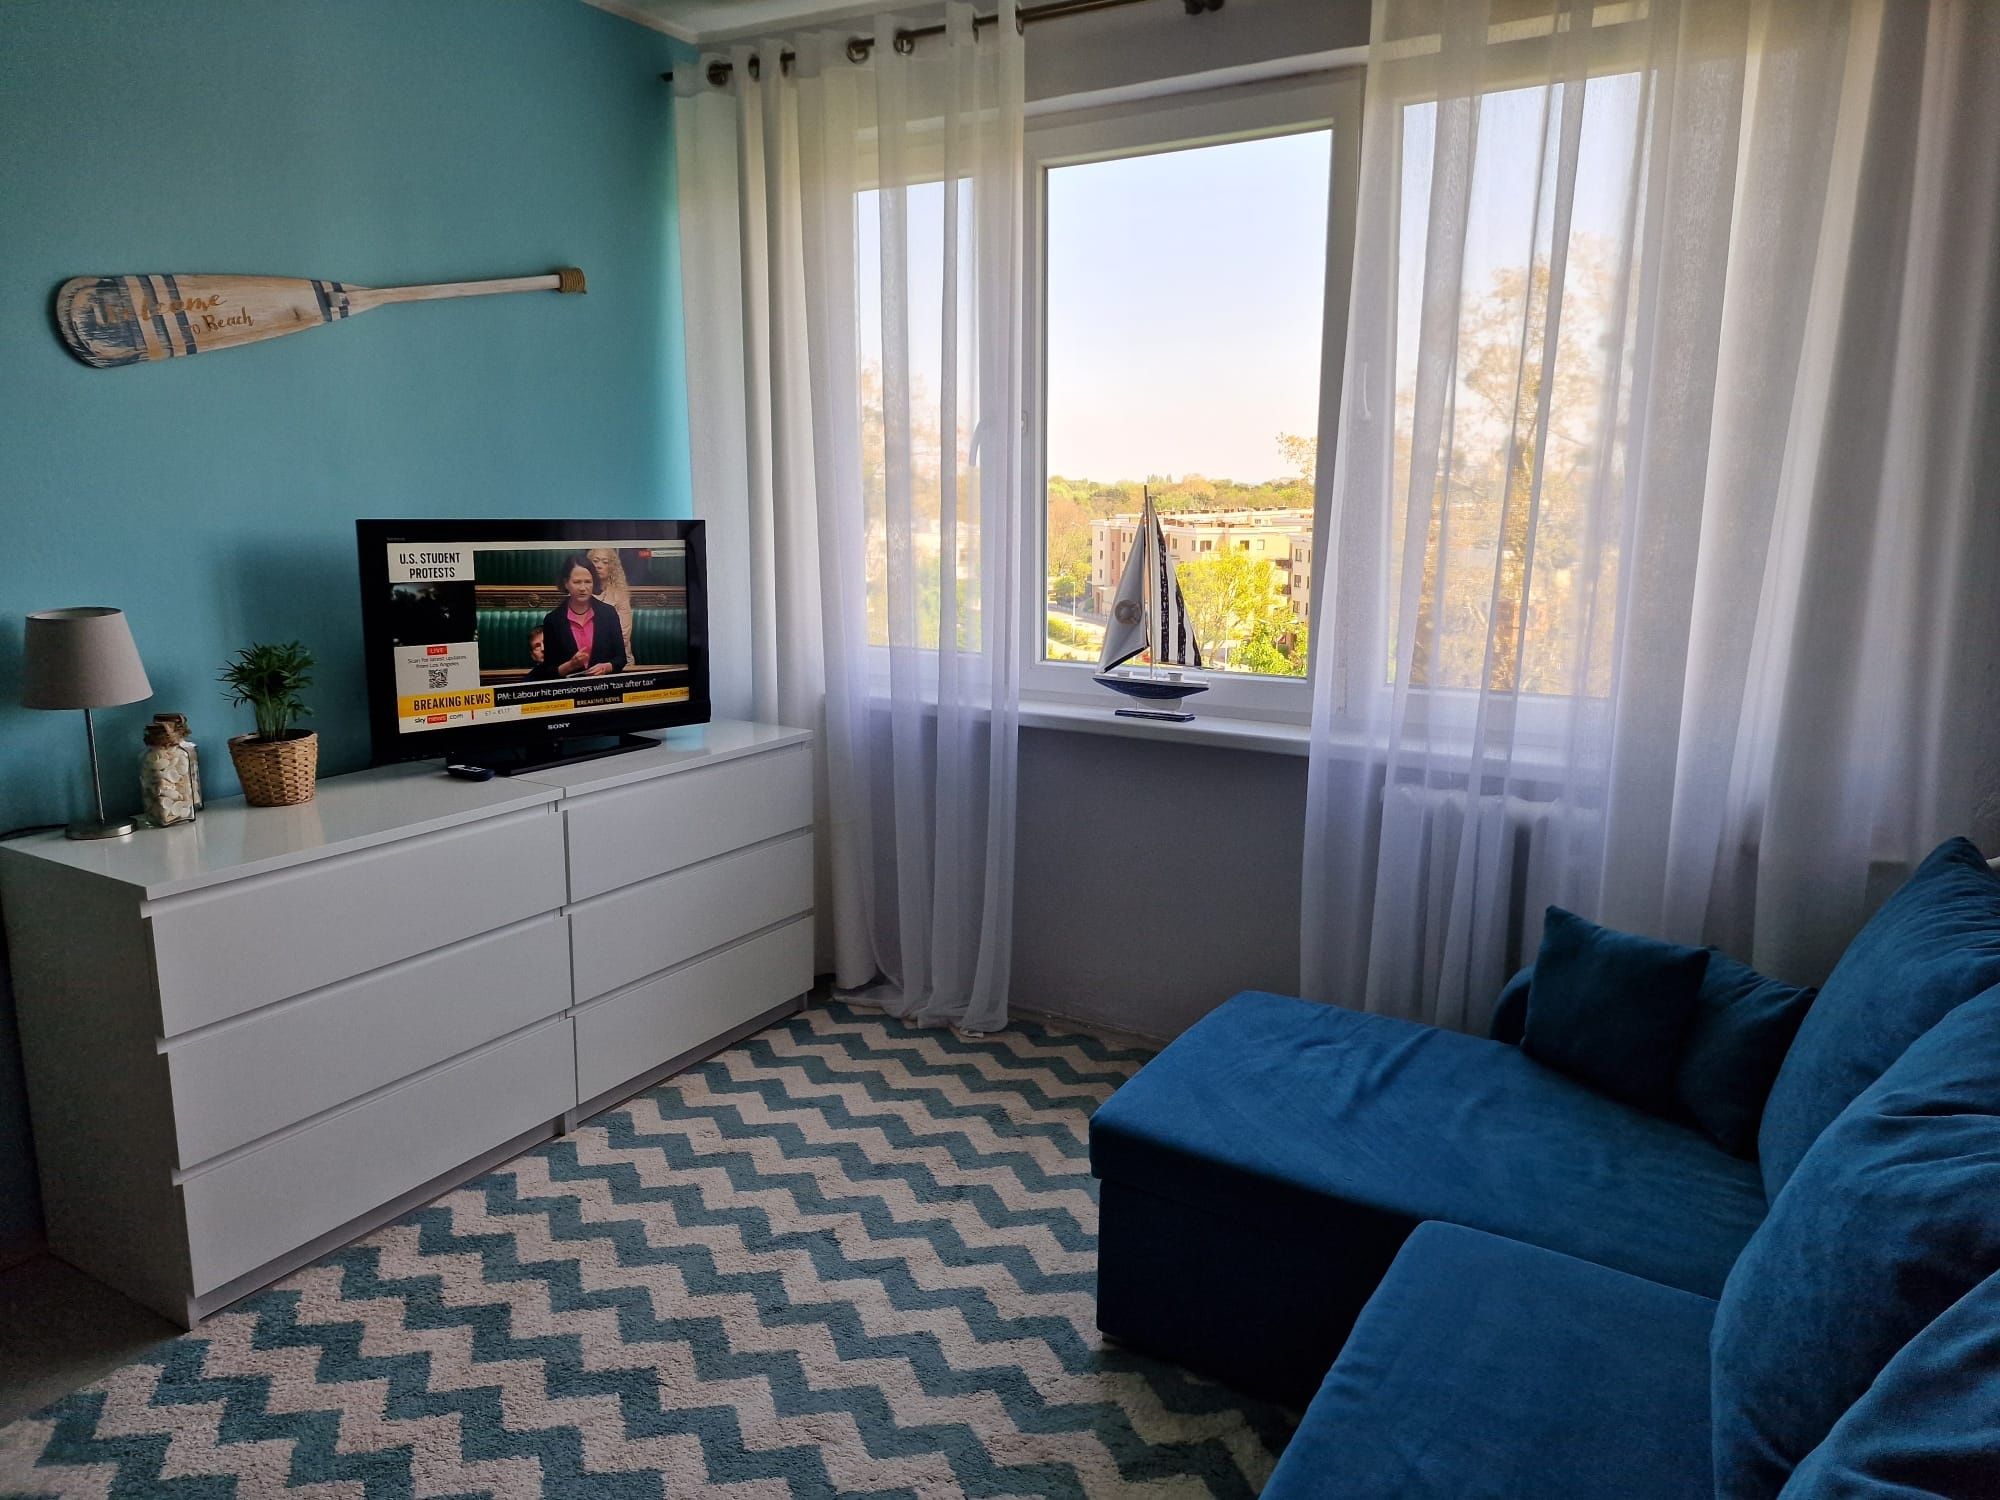 Gdańsk mieszkanie,apartament do wynajęcia - wakacje,Majówka nad Morzem